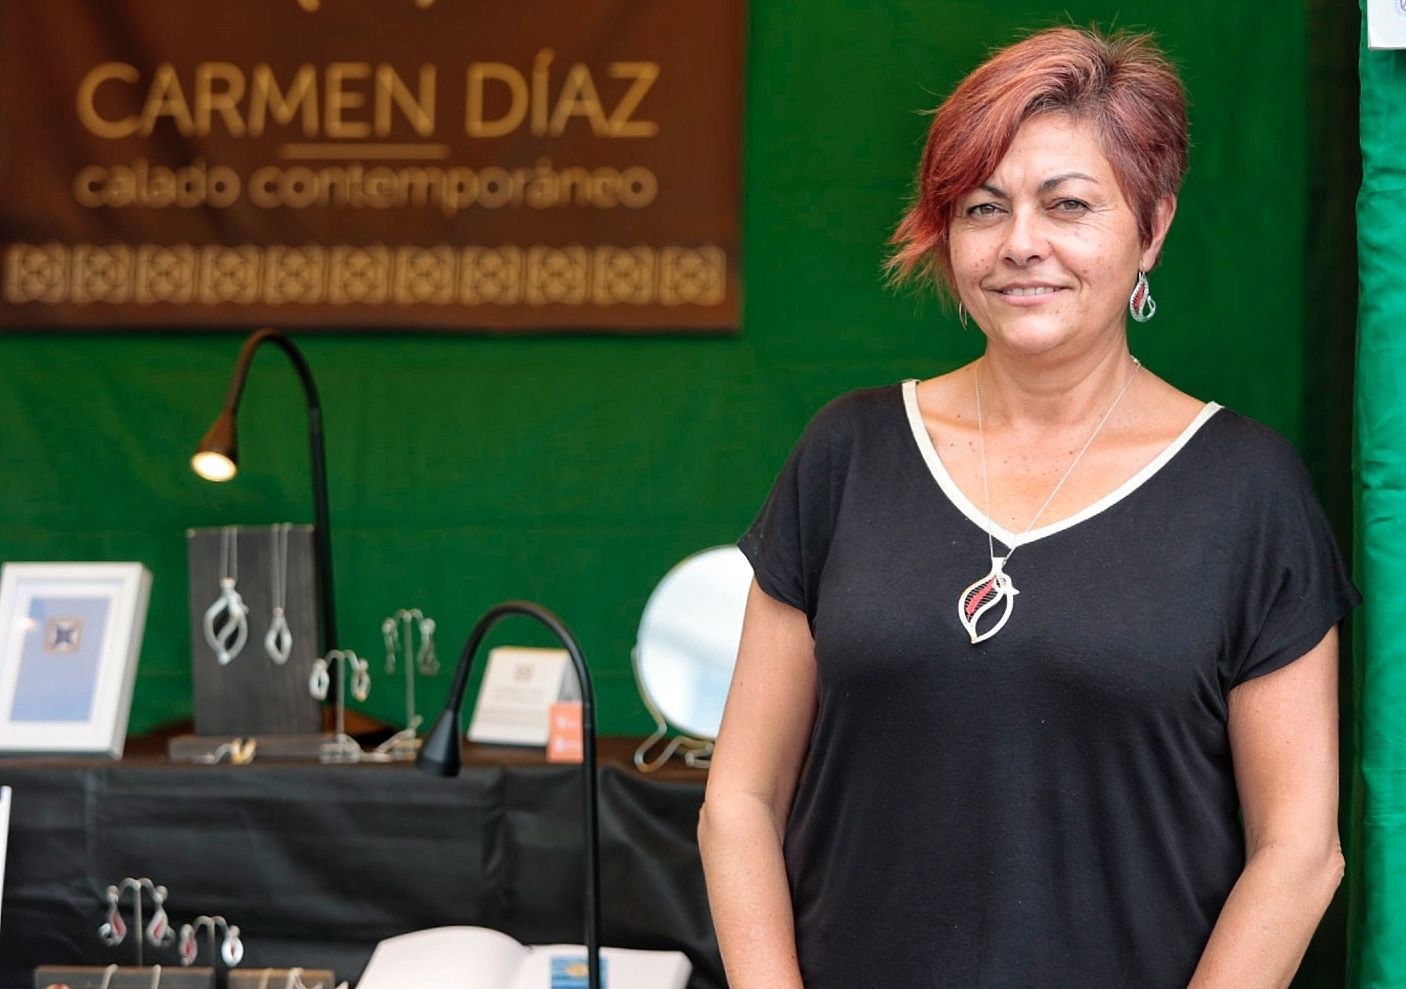 Carmen Díaz, artesana de calado contemporáneo